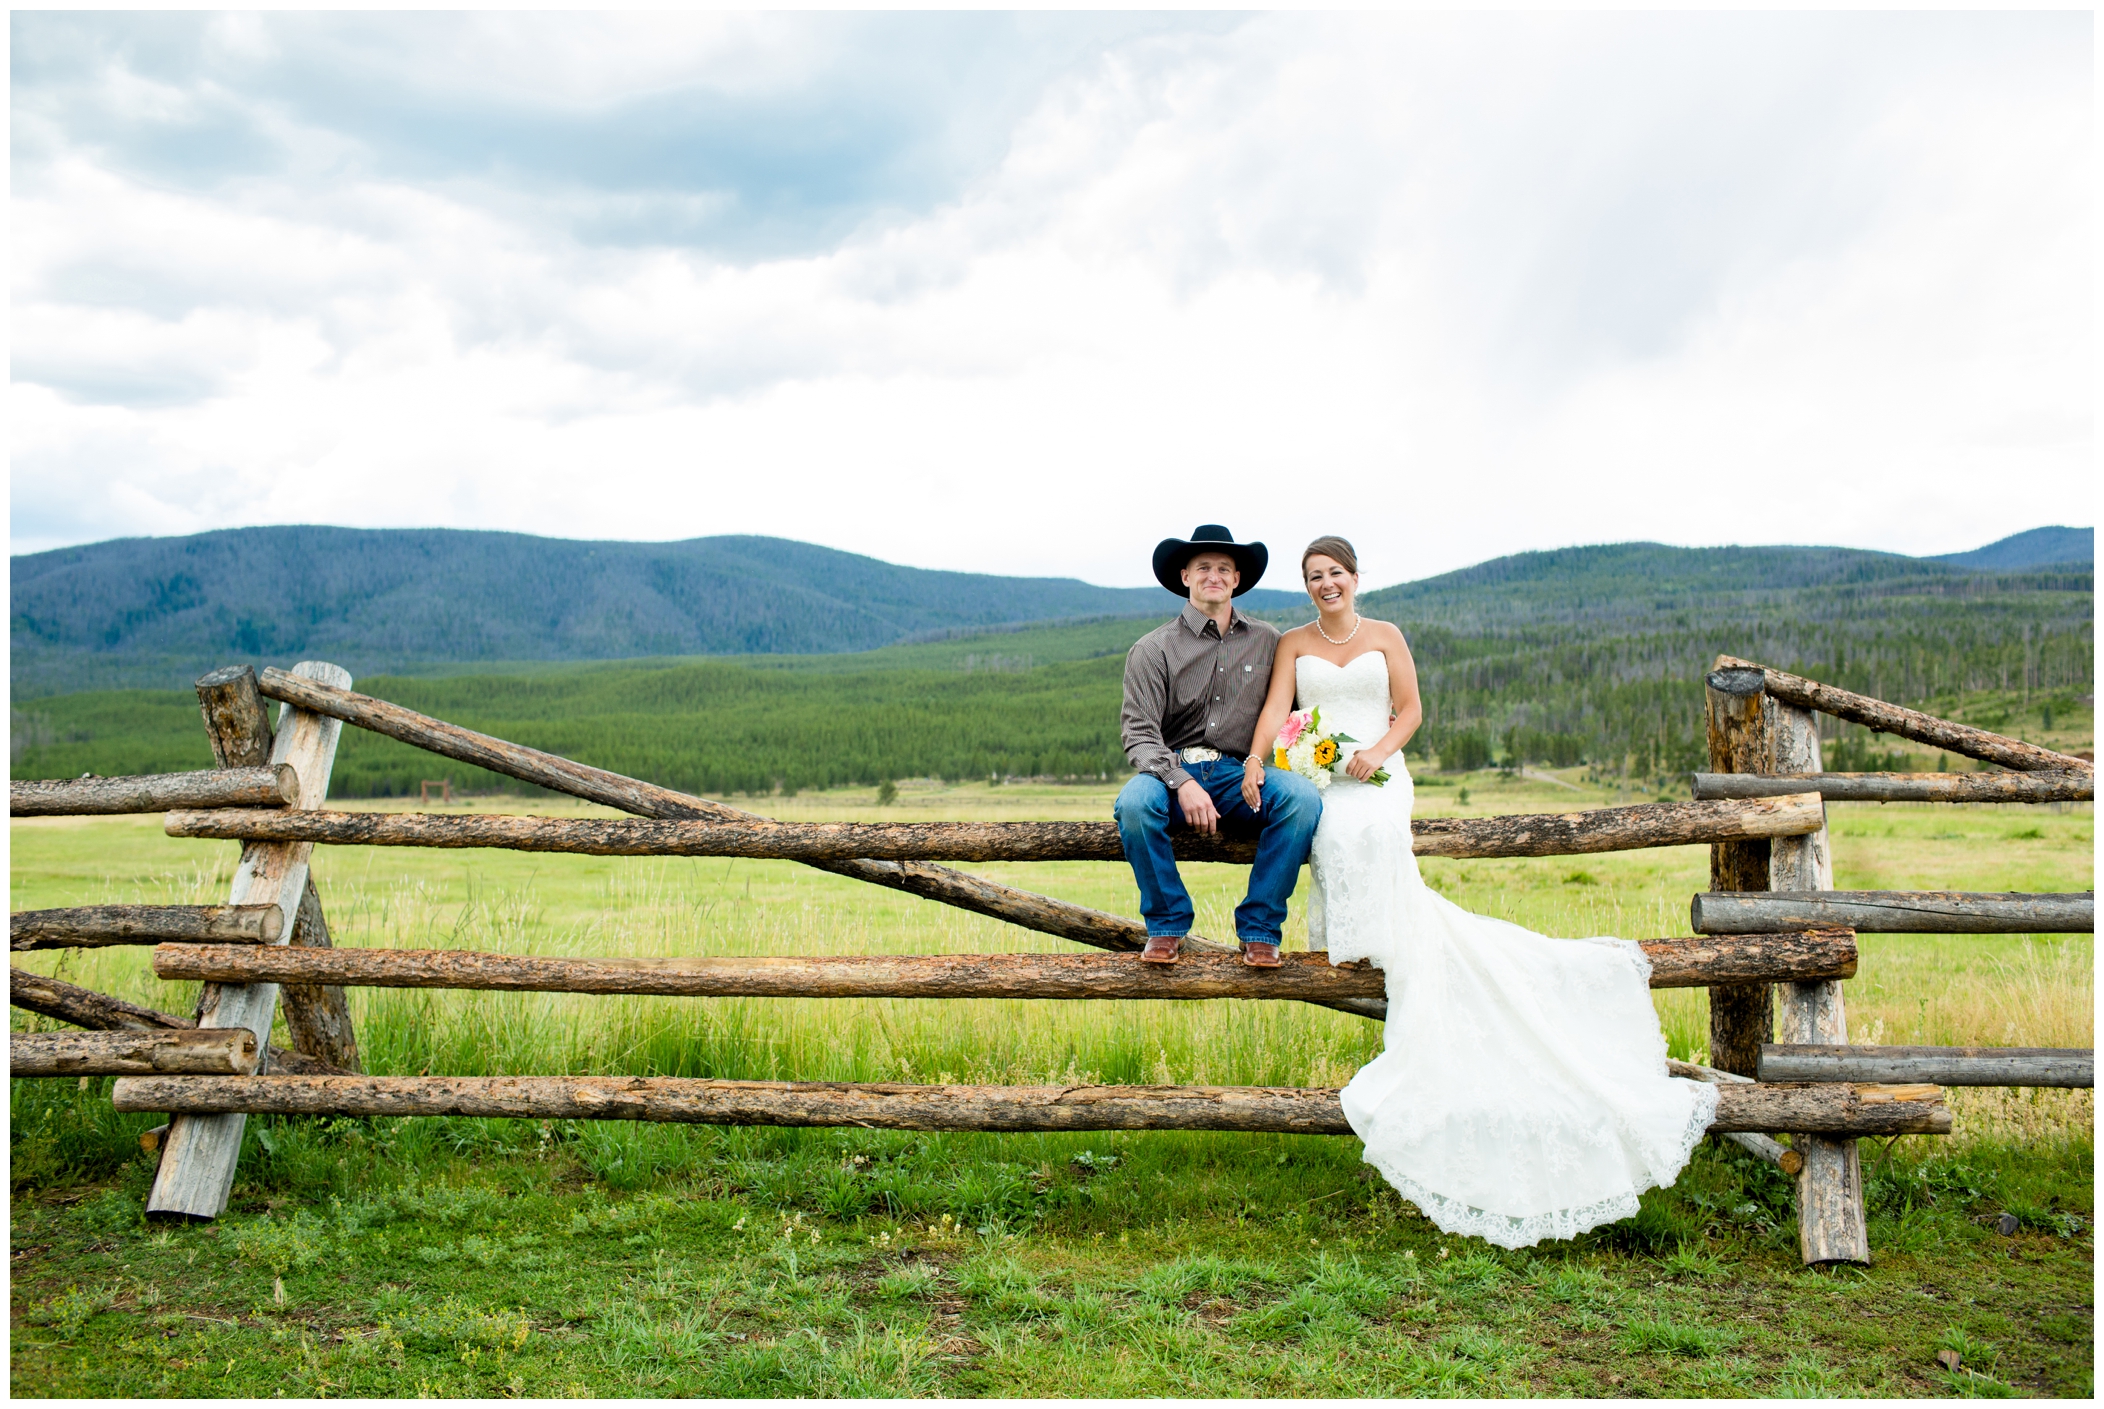 Colorado wedding photos at Winding River Ranch 